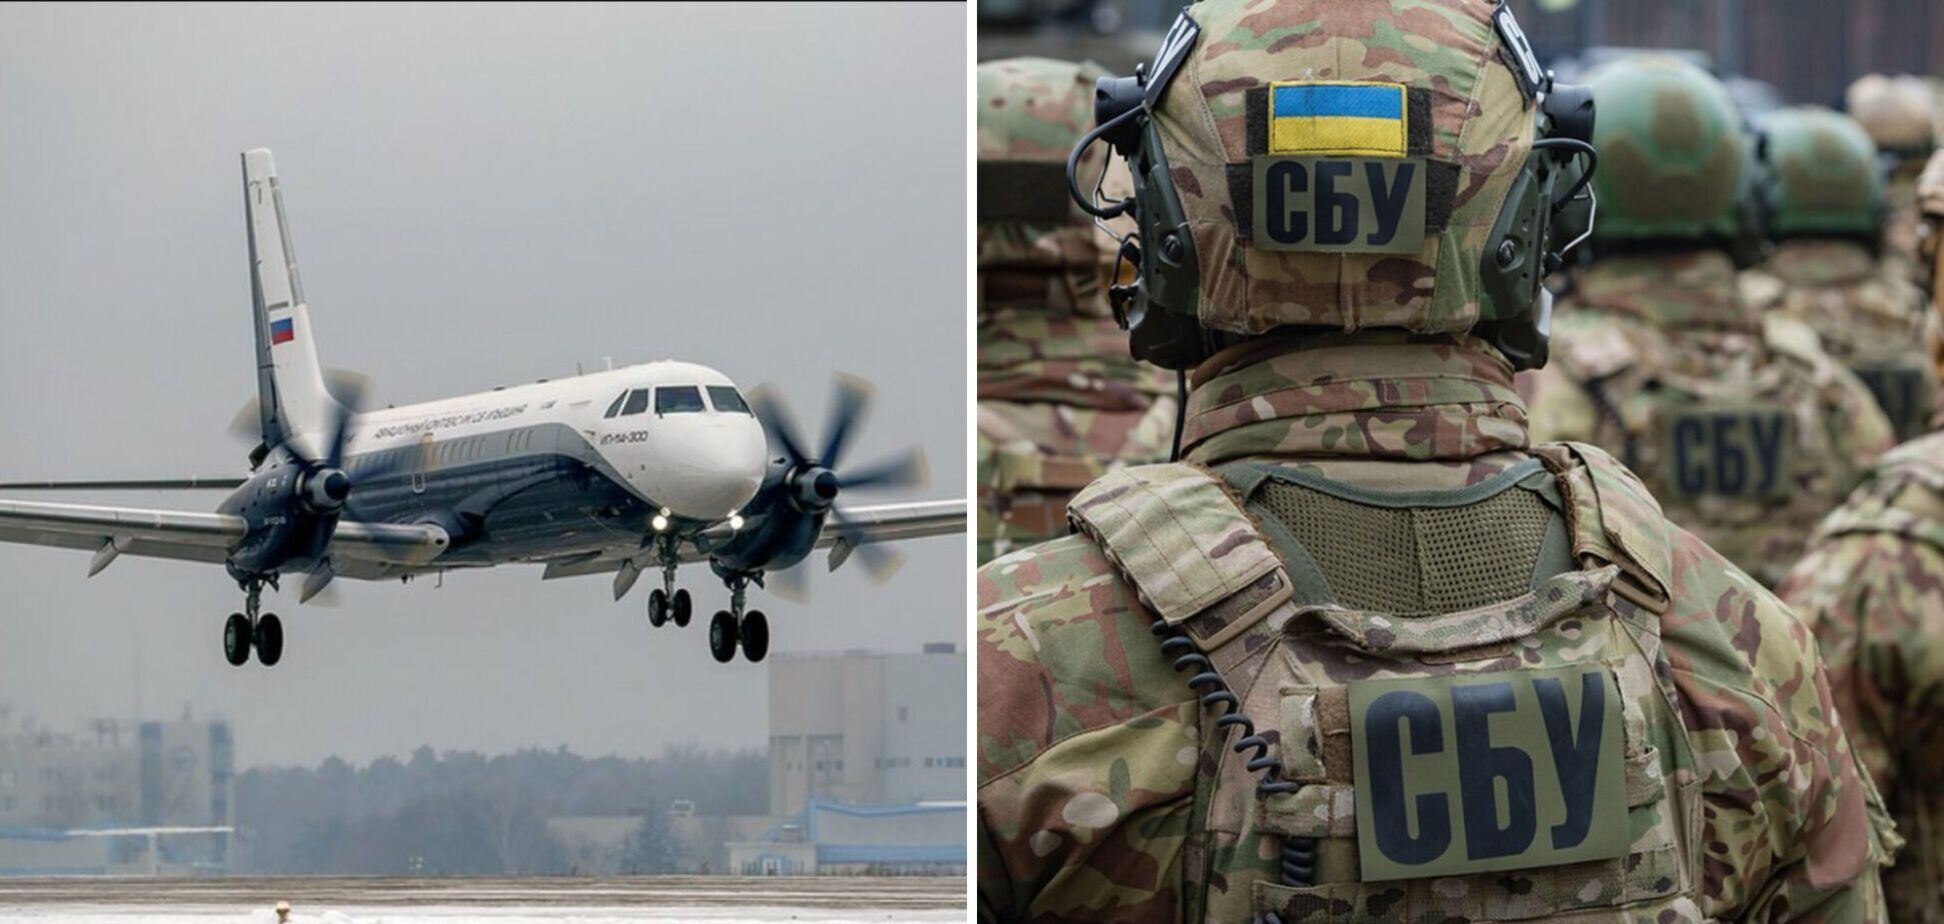 СБУ во время спецоперации обезвредила ДРГ, которая планировала сбить пассажирский самолет над Россией или Беларусью